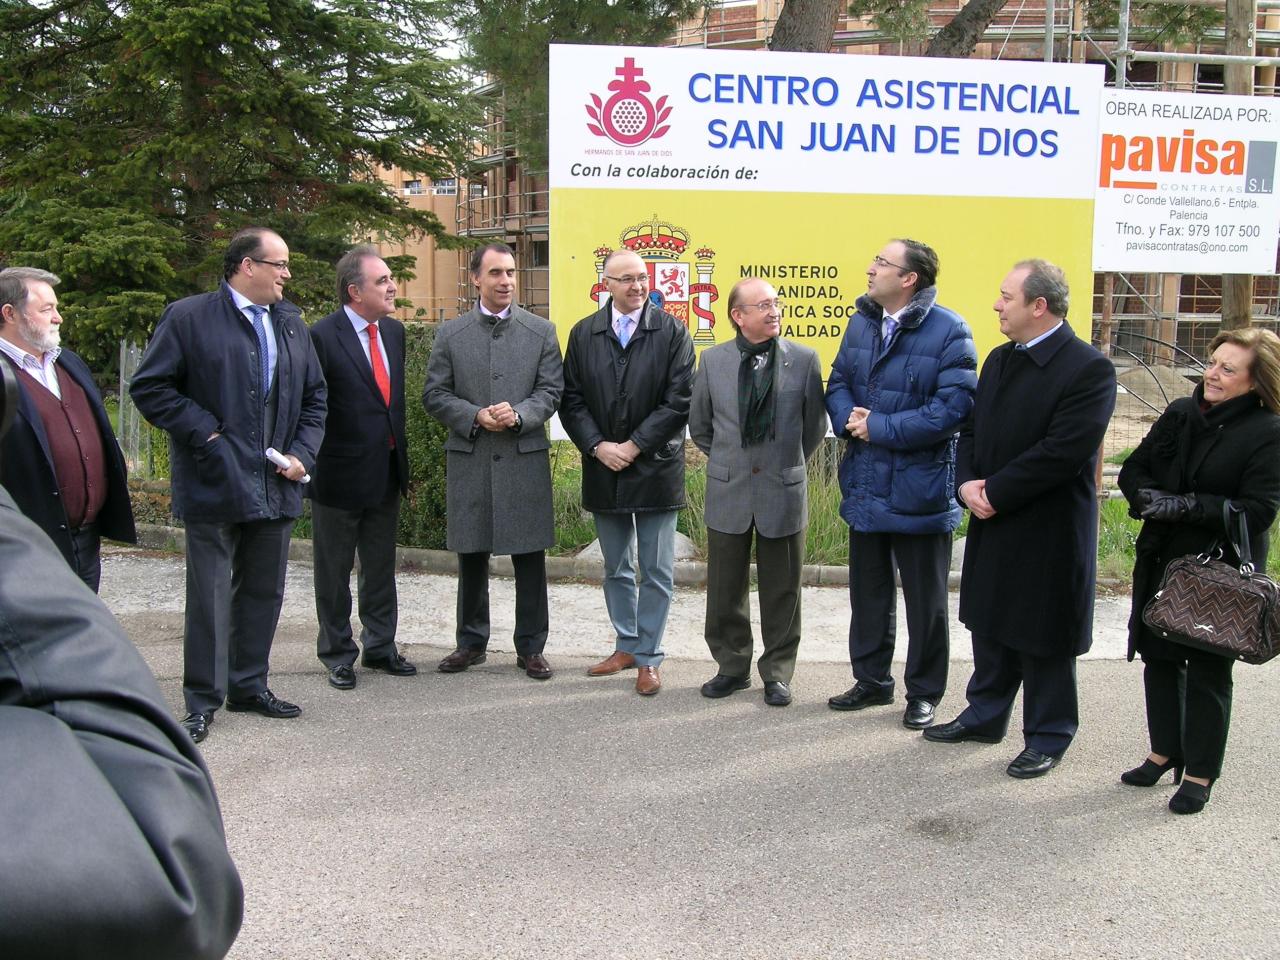 274 programas de 94 entidades sociales de las nueve provincias de Castilla y León reciben del Estado 18,49 millones de euros procedentes de la asignación tributaria del IRPF